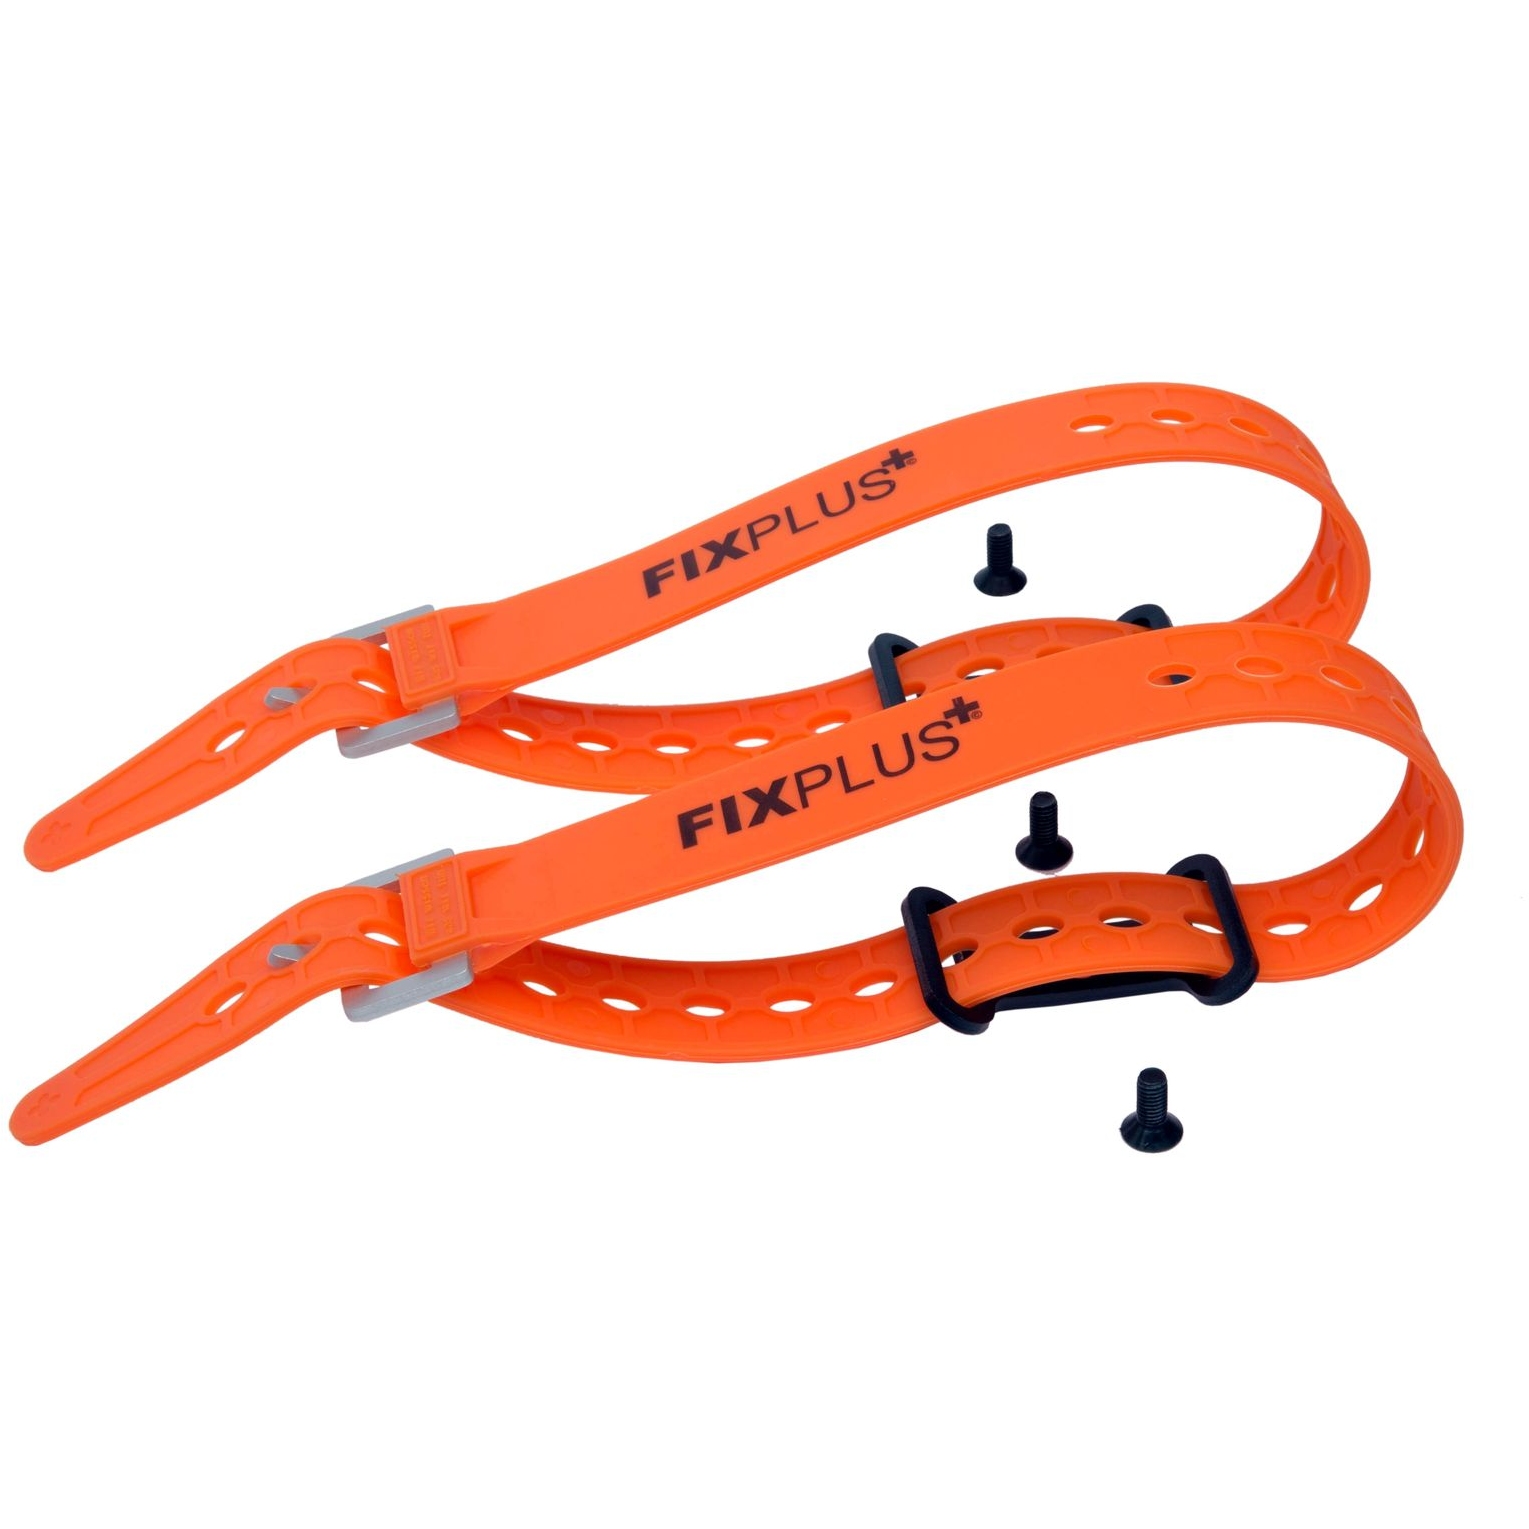 Productfoto van FixPlus Strap Anchor 2 pcs. incl. 2x Strap Orange 46cm - black/orange